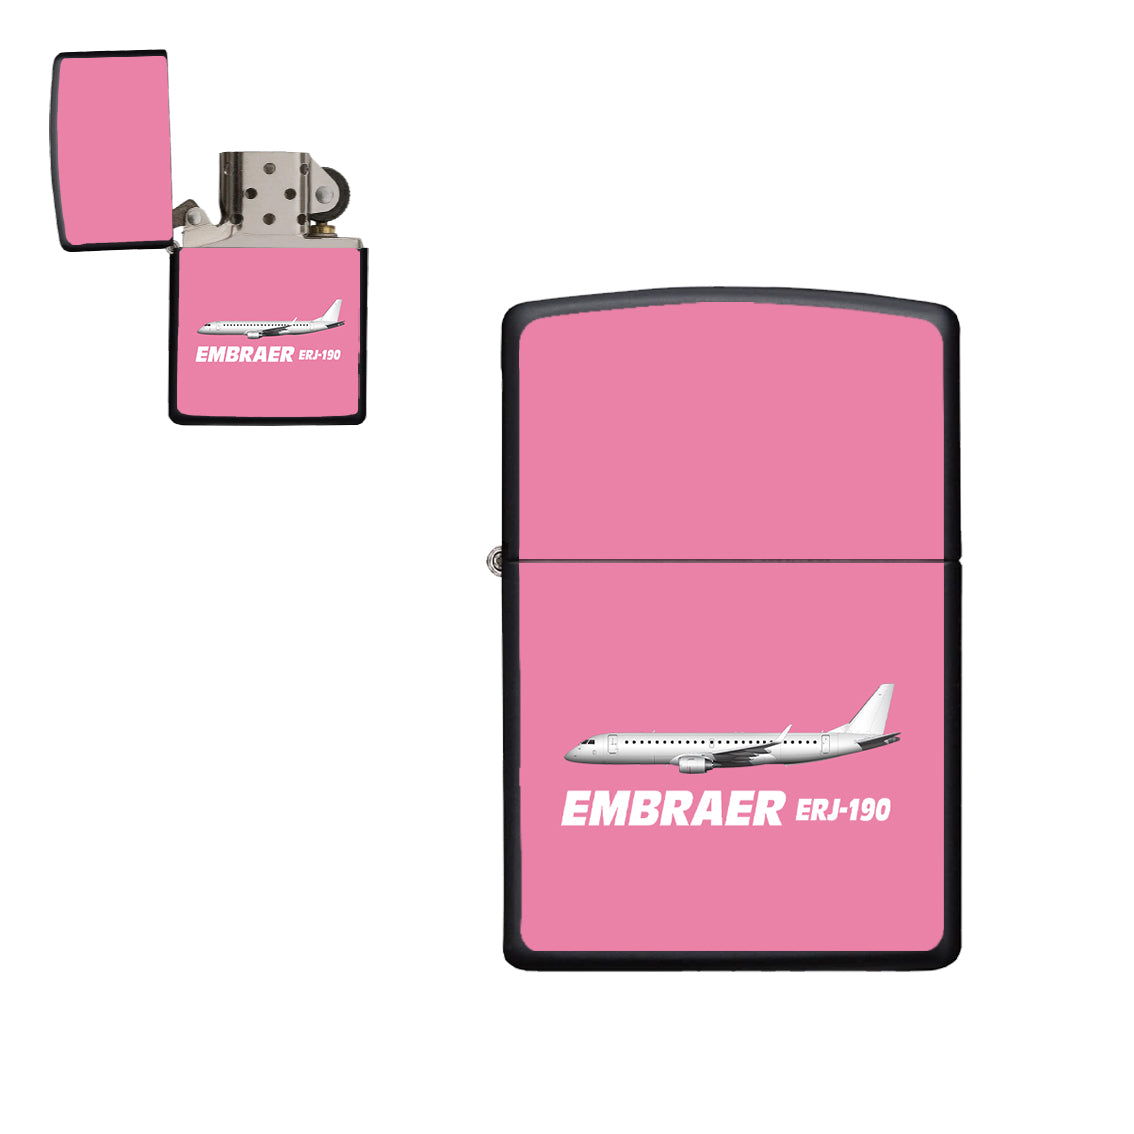 The Embraer ERJ-190 Designed Metal Lighters